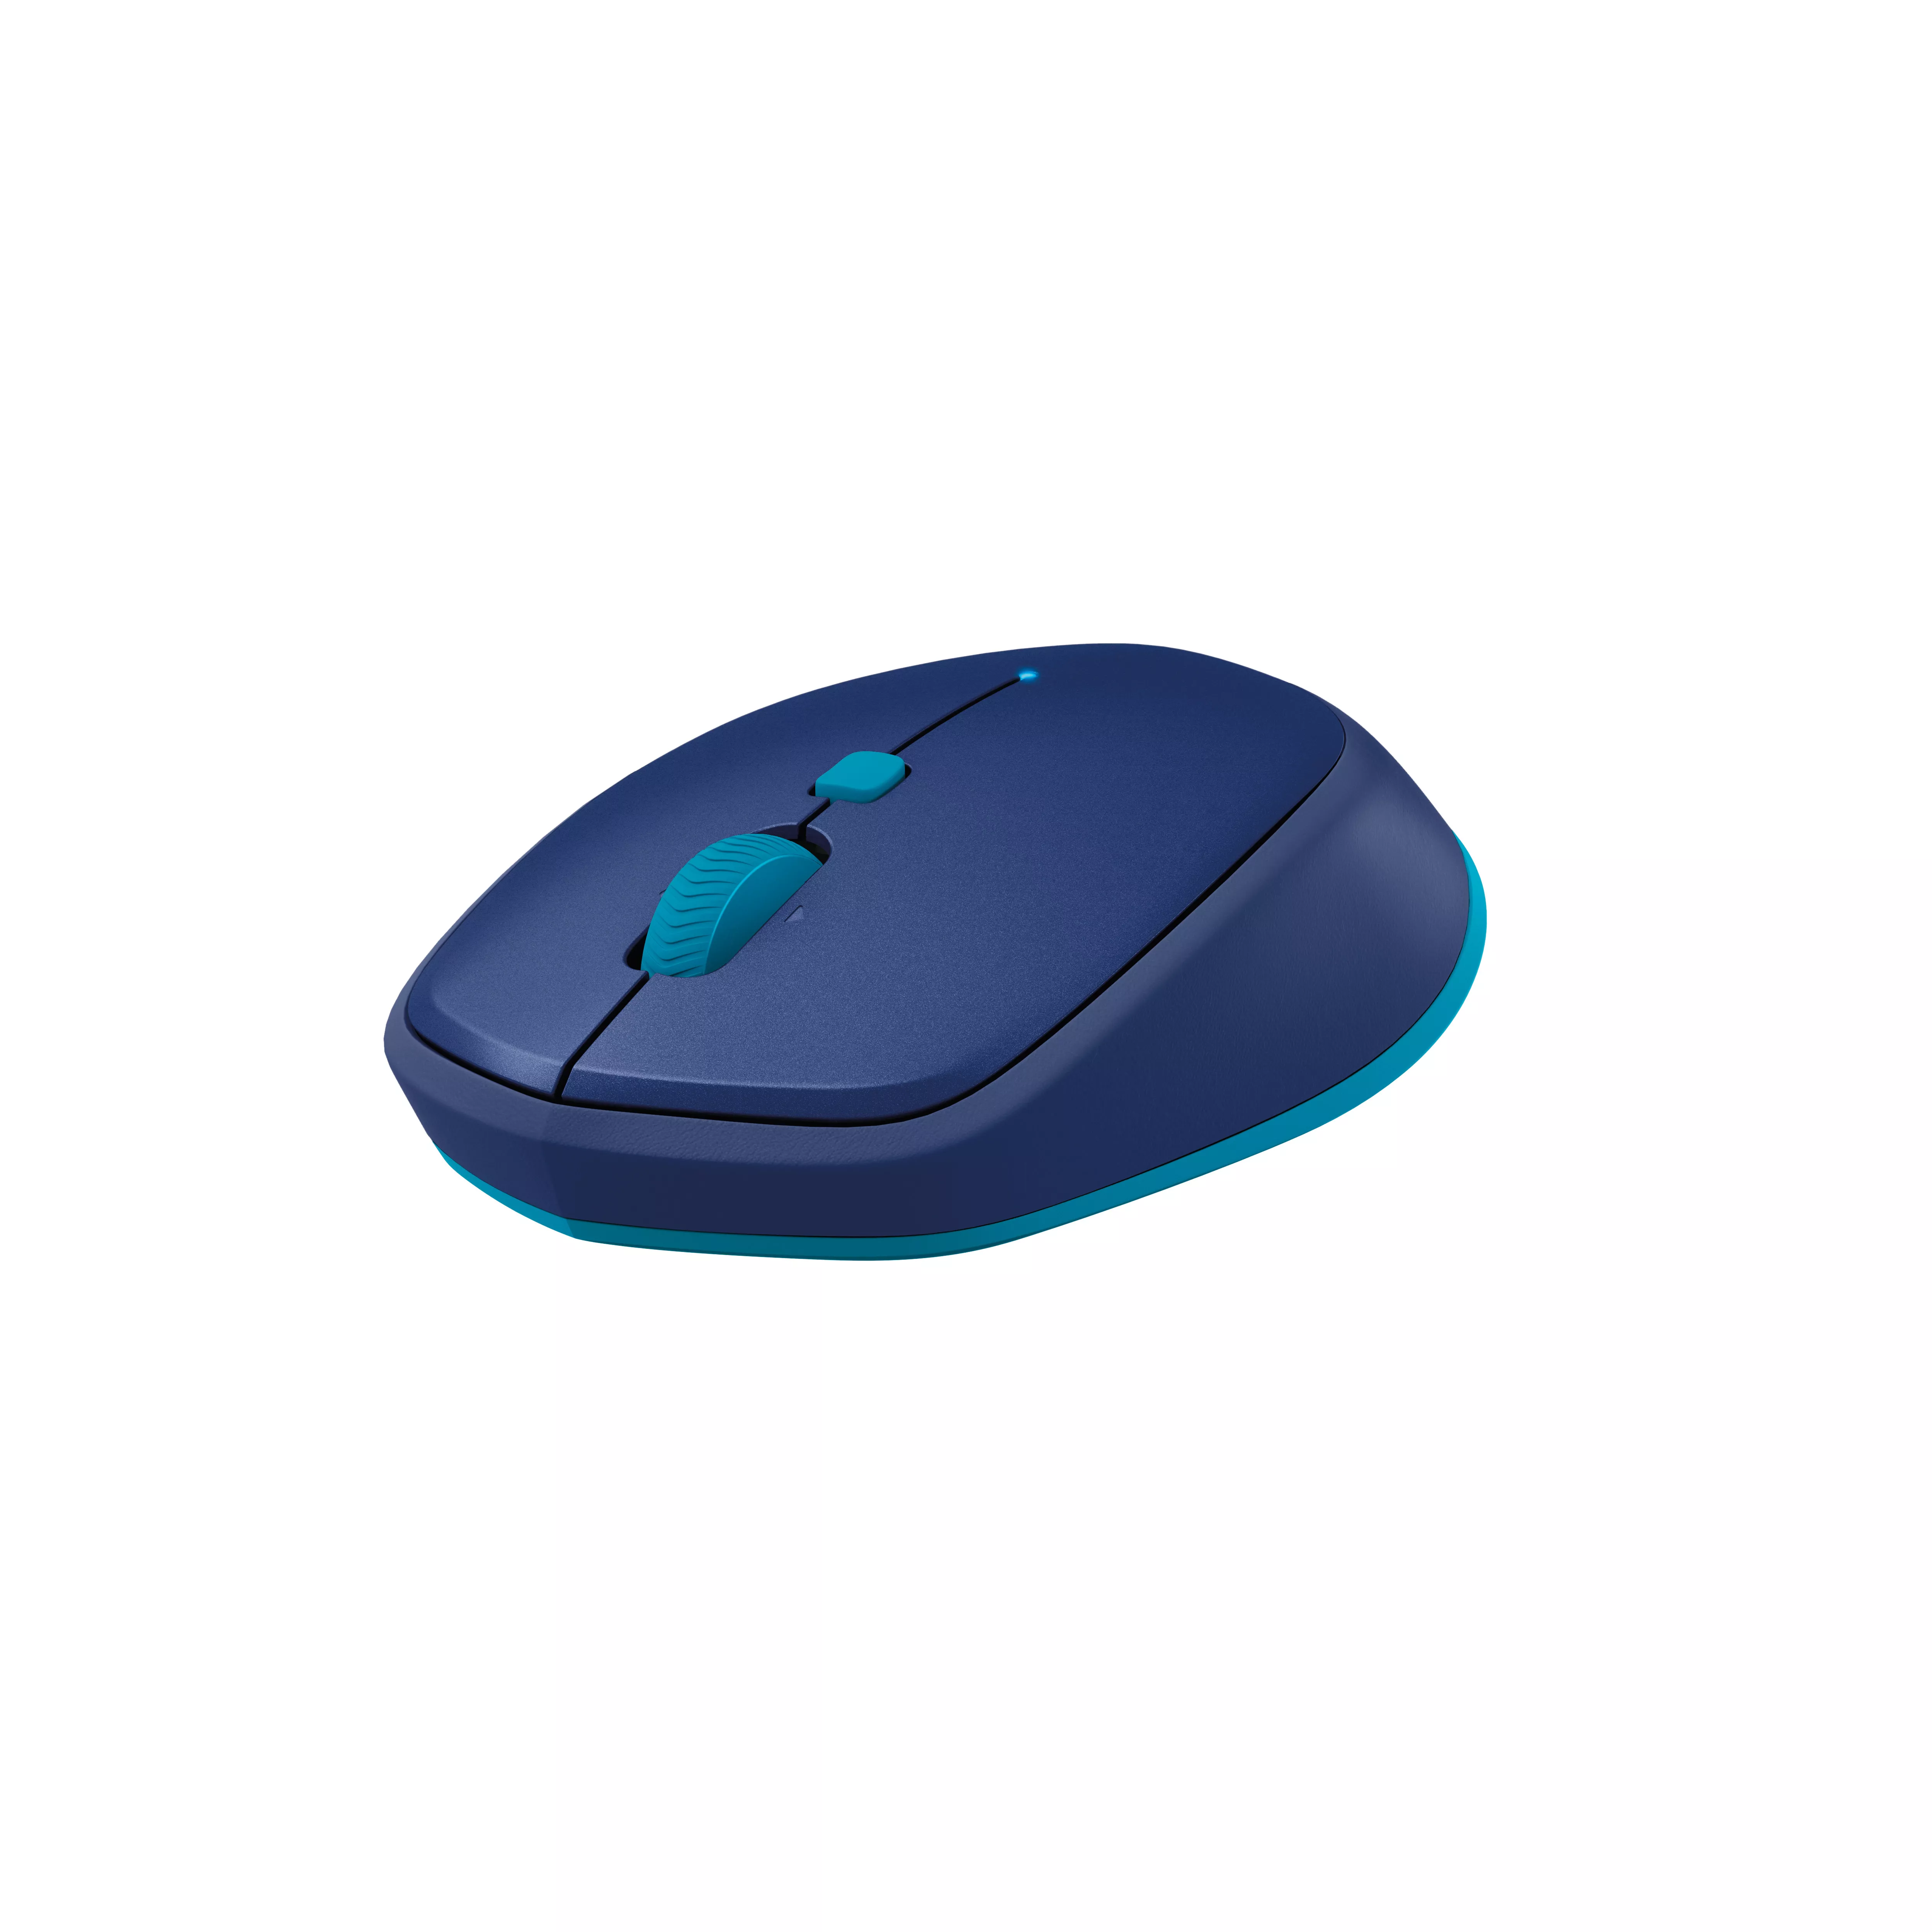 Vente Logitech M535 Bluetooth Mouse Logitech au meilleur prix - visuel 2